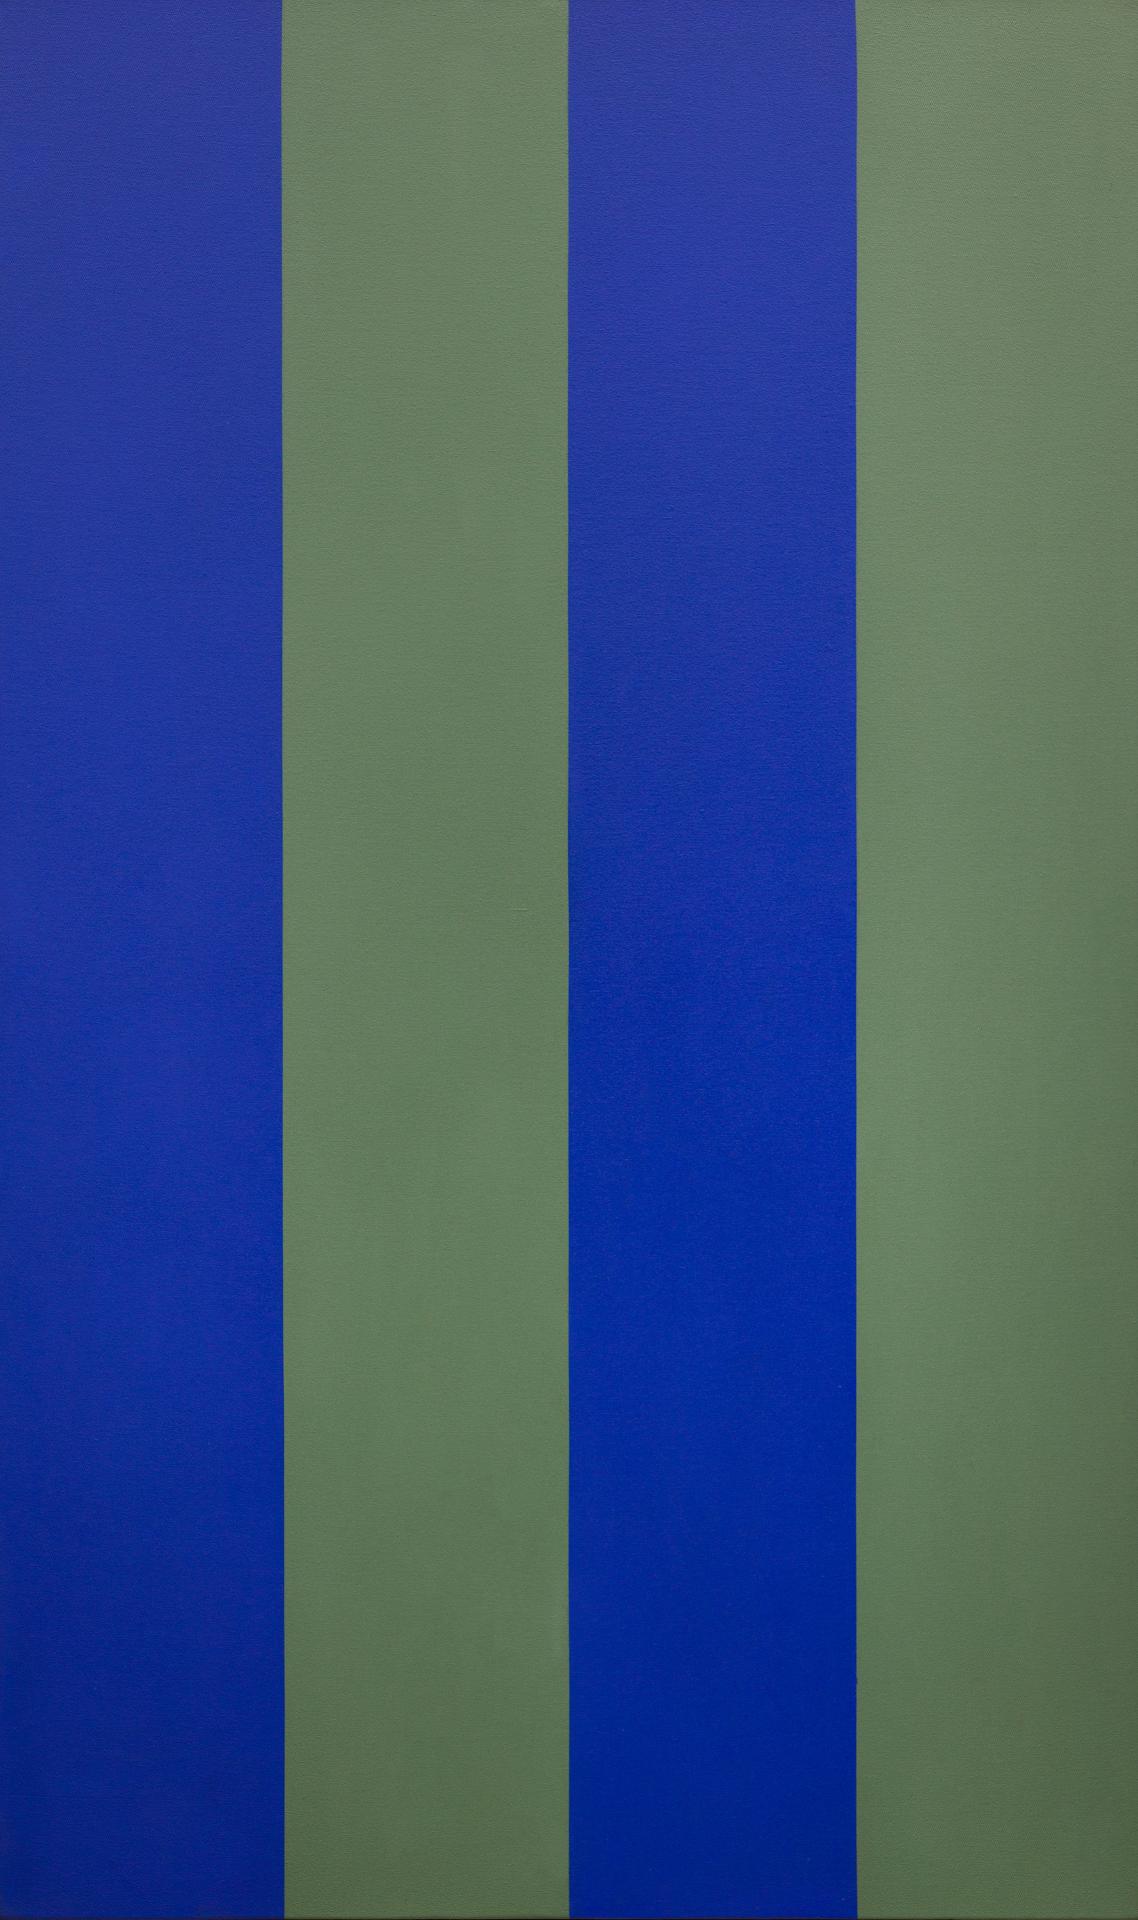 Guido Molinari (1933-2004) - Dyade bleu-vert, 1969